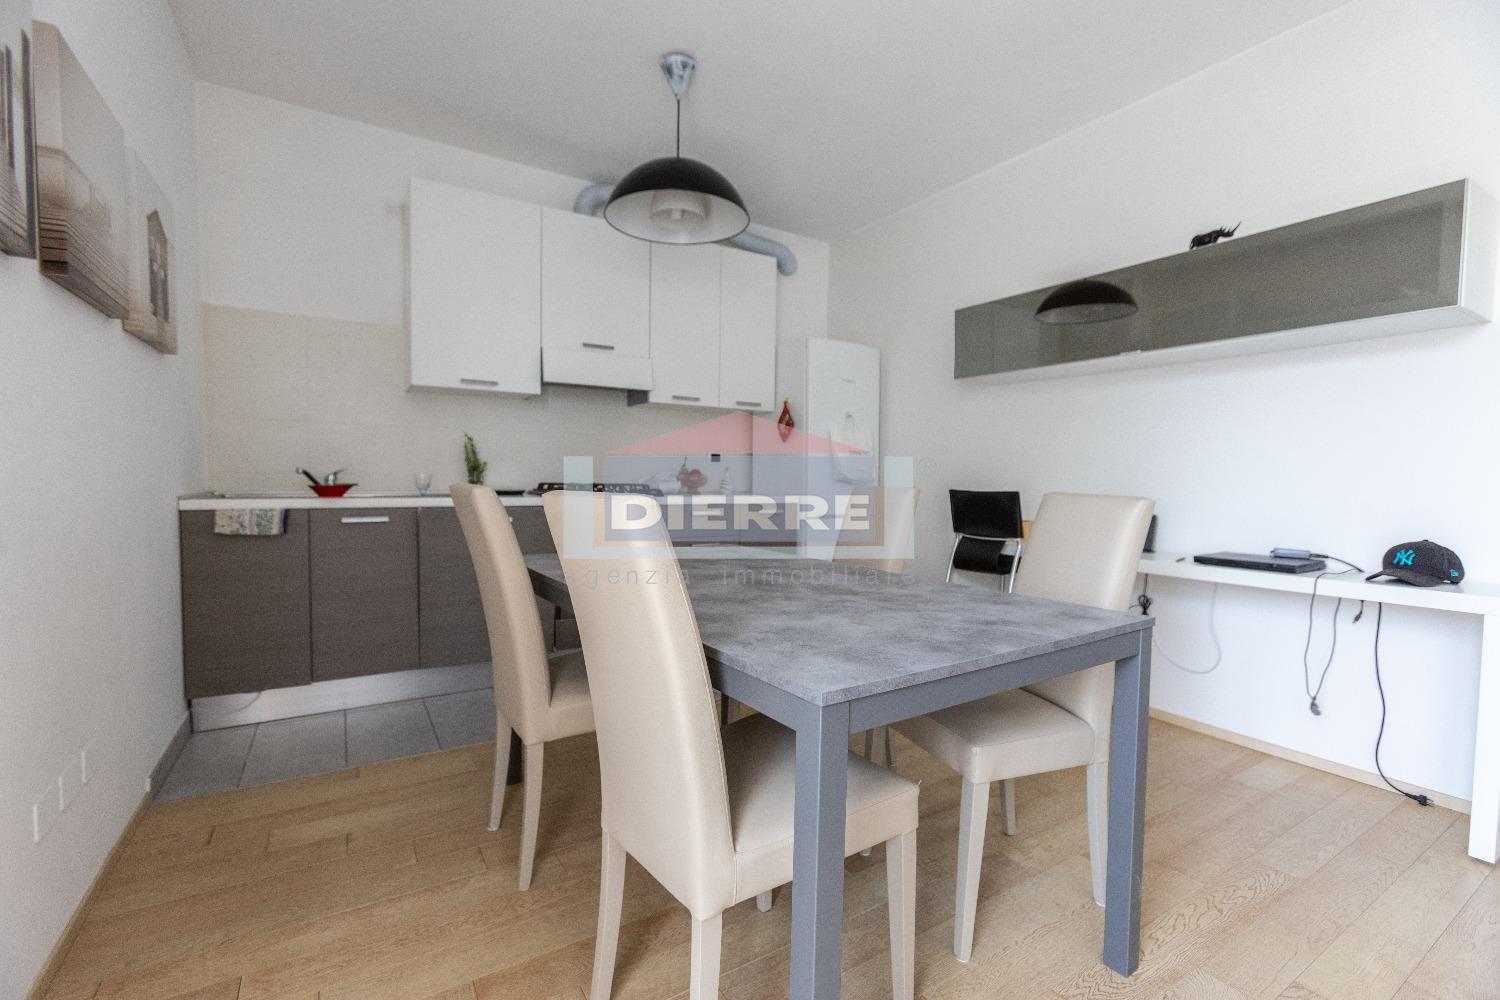 Appartamento in vendita a Carpi, 3 locali, prezzo € 175.000 | PortaleAgenzieImmobiliari.it